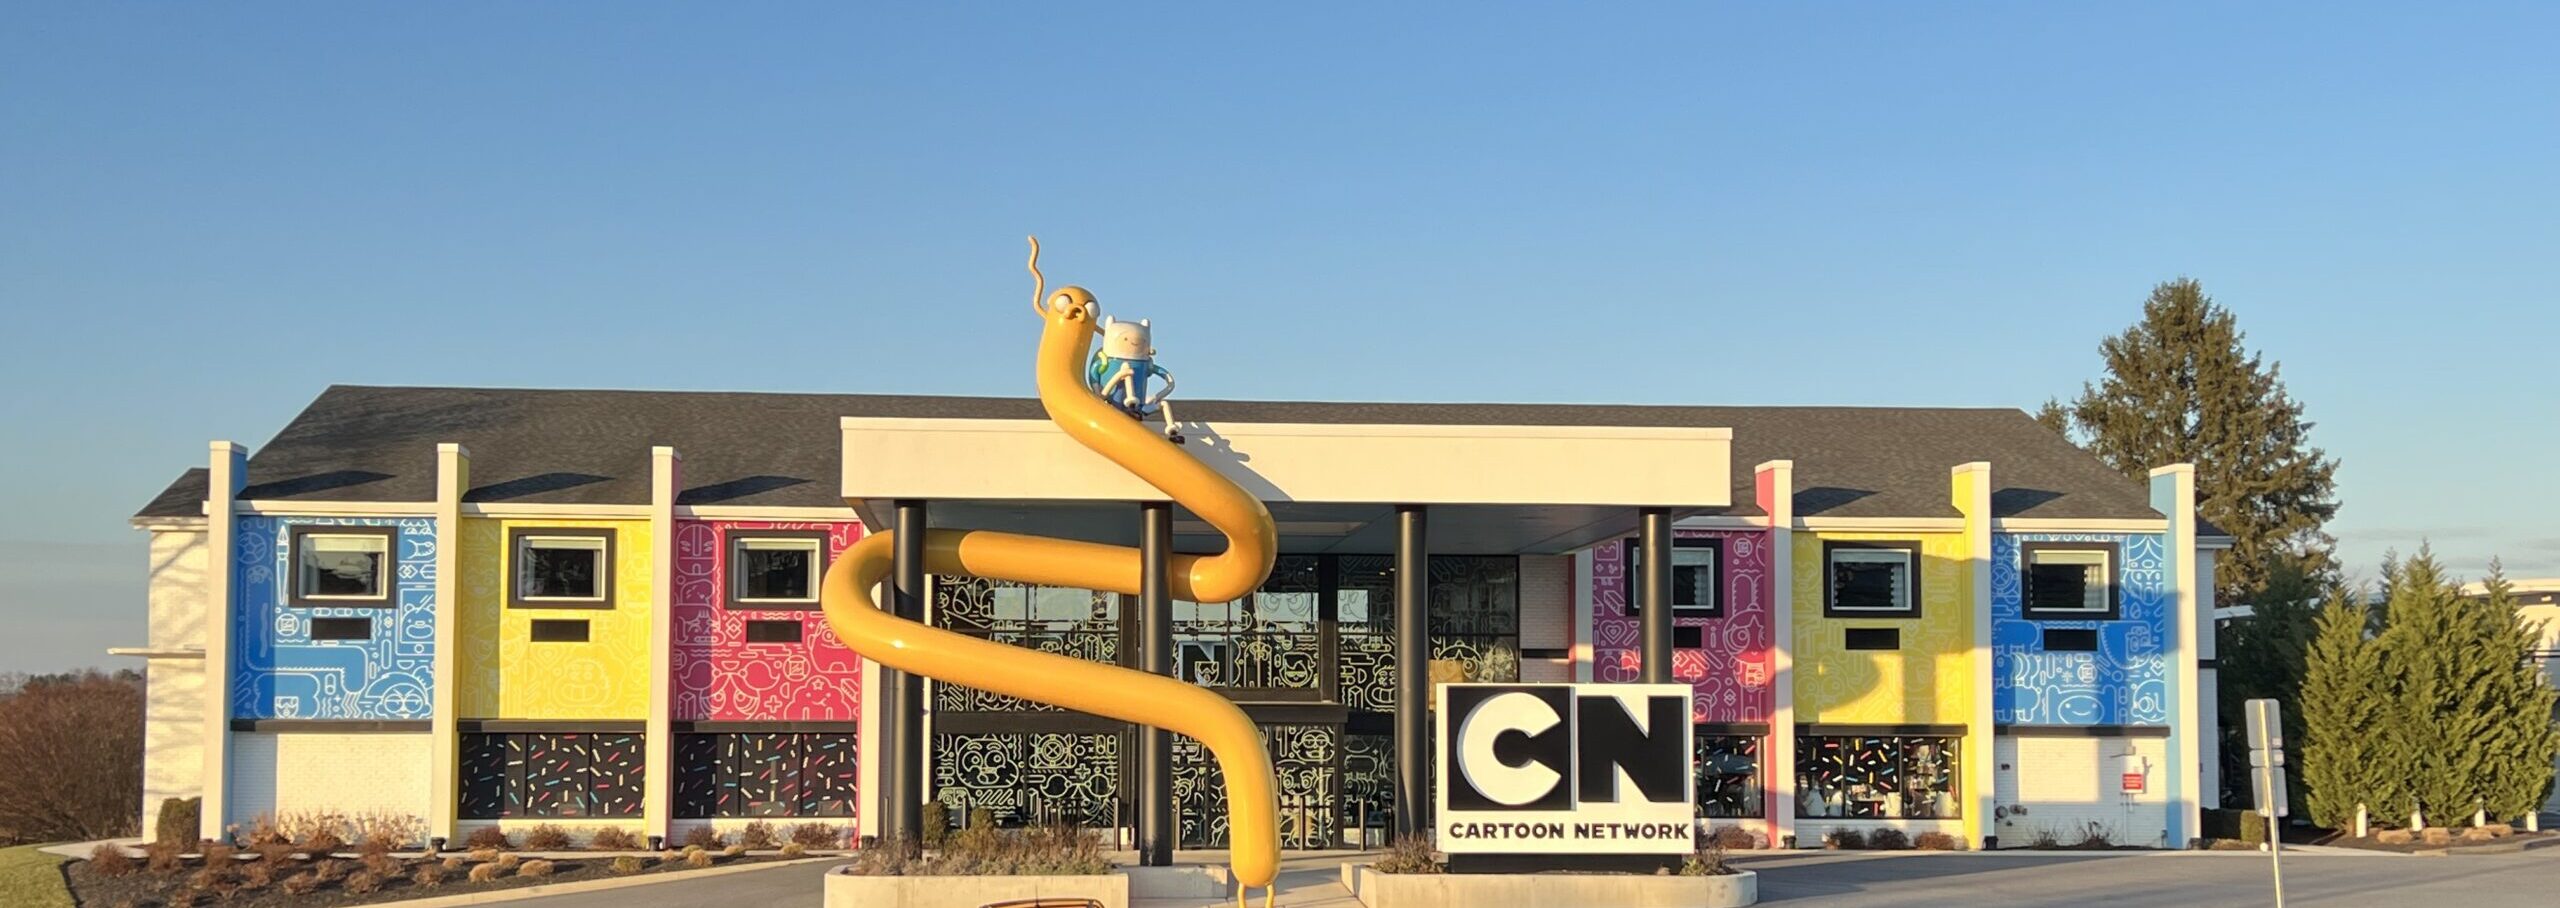 Deal: Cartoon Network Hotel